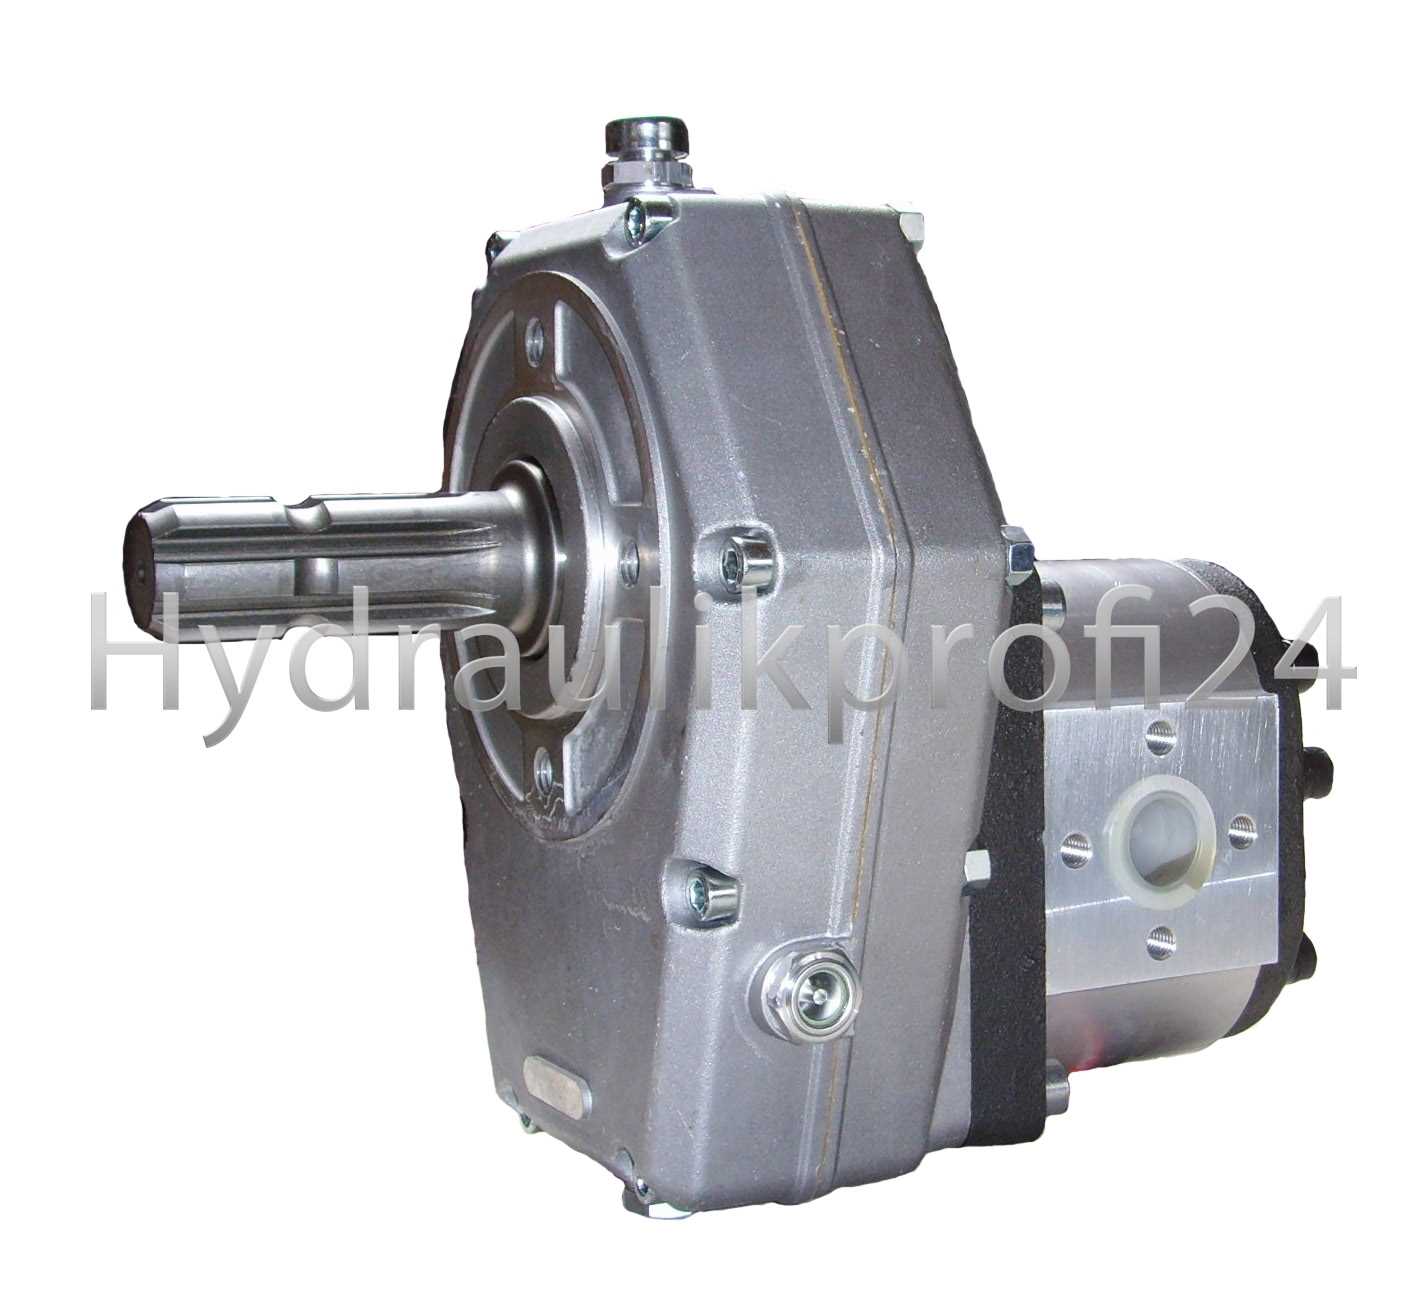 Hydraulikprofi24 - Zapfwellengetriebe mit Stummel und Pumpe 36ccm, 73l/min  BG3 mit Vierlochflansch